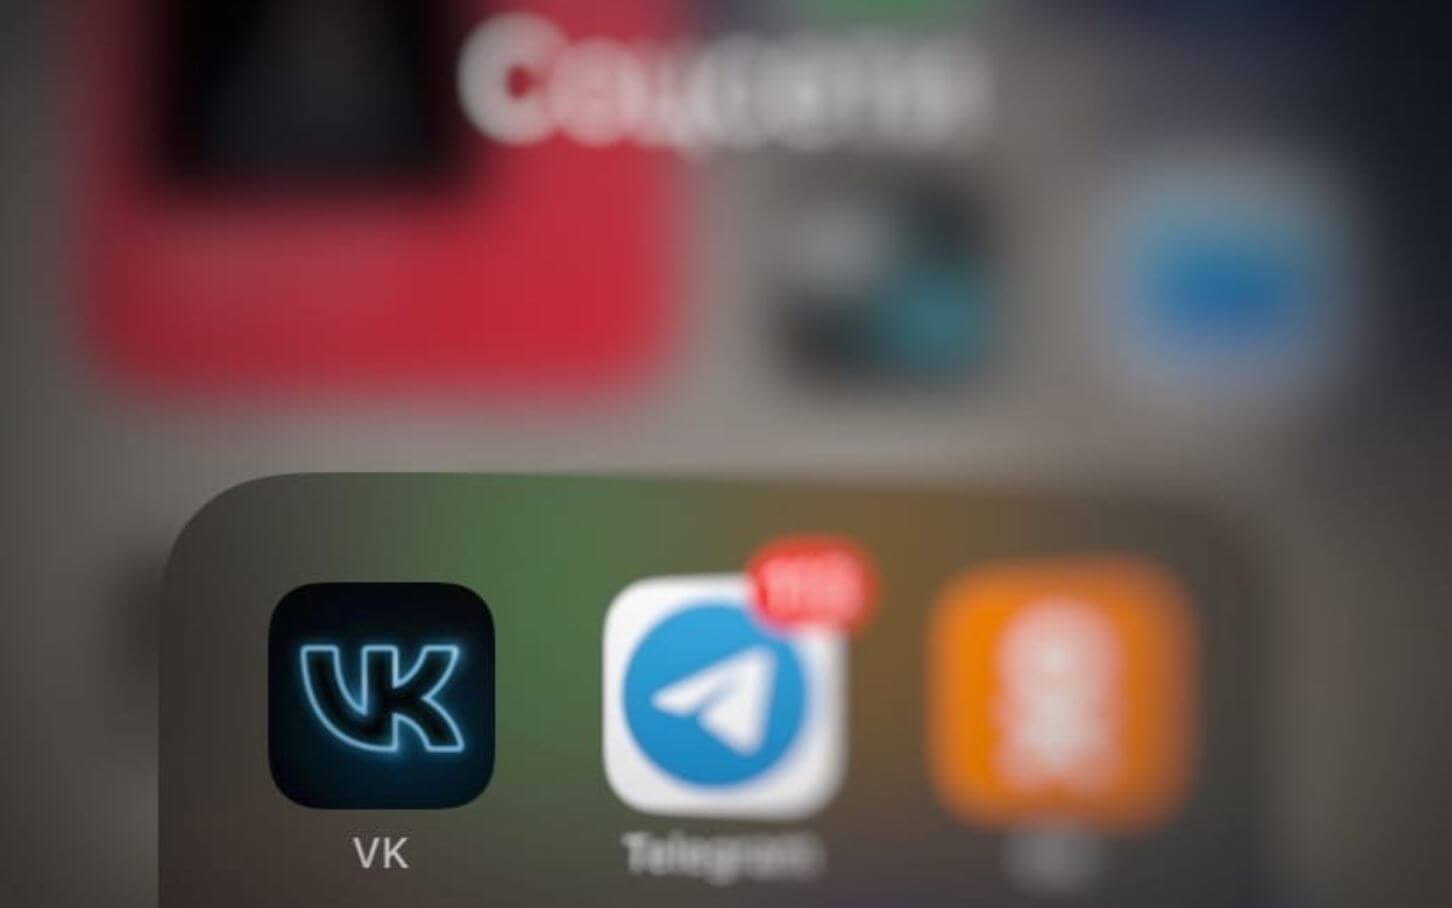 Как настроить приватность профиля ВКонтакте | VK